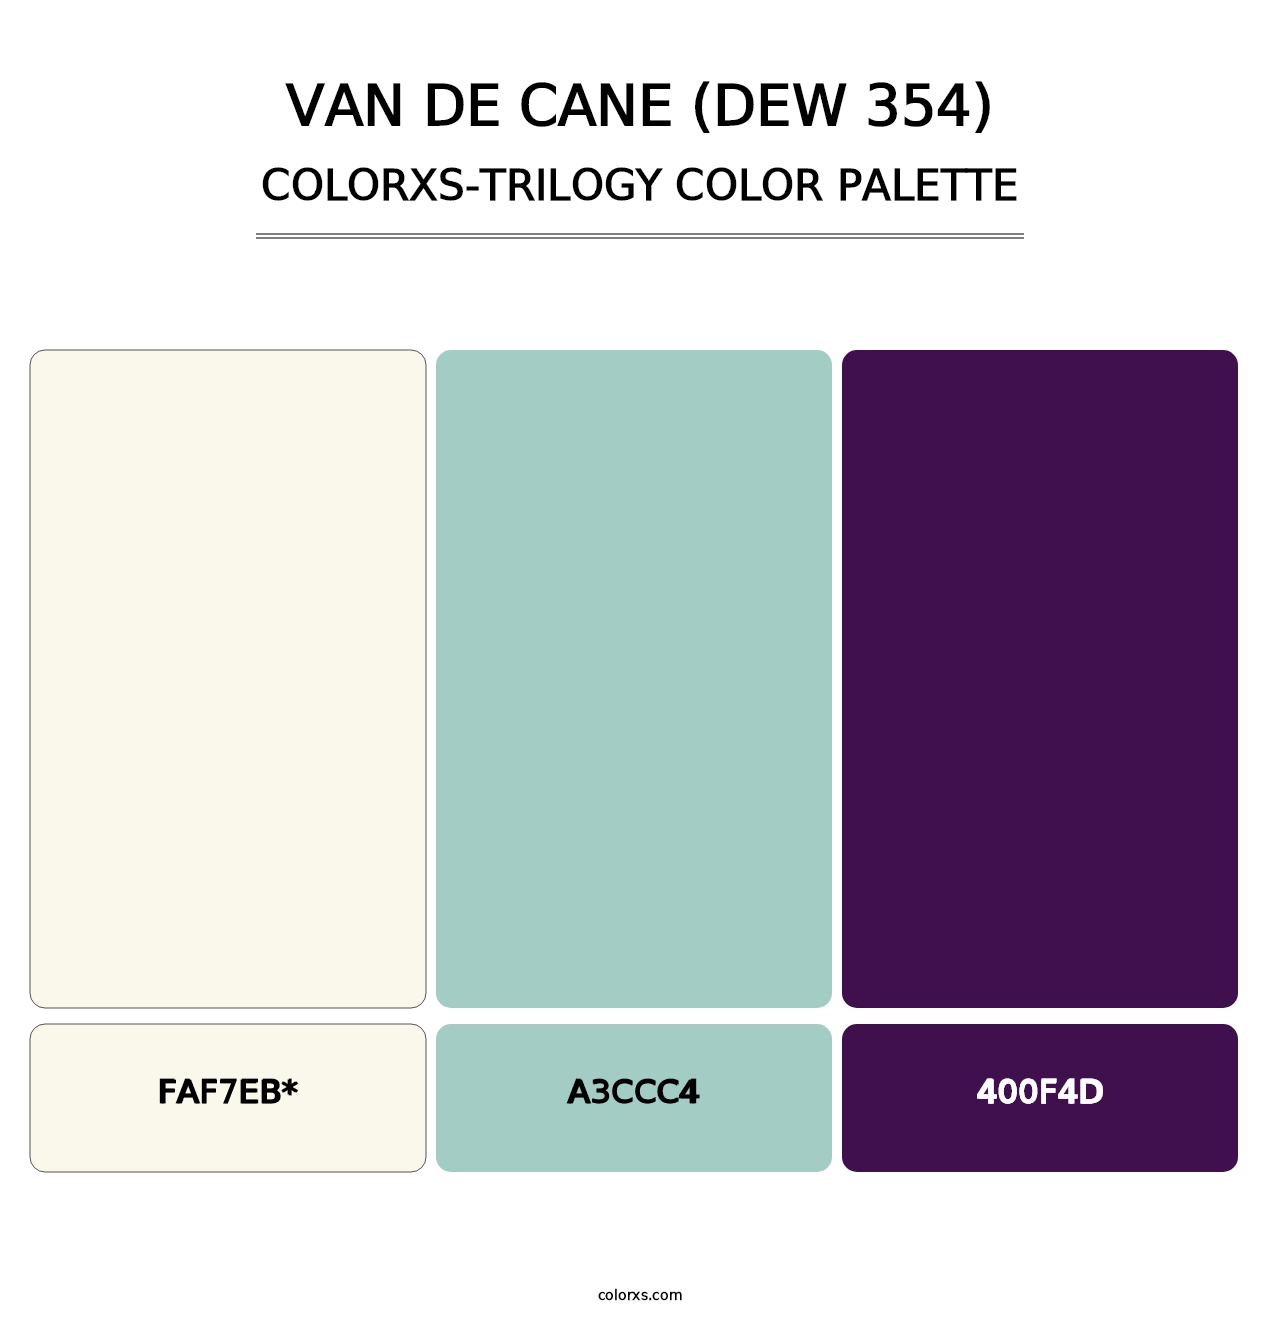 Van de Cane (DEW 354) - Colorxs Trilogy Palette